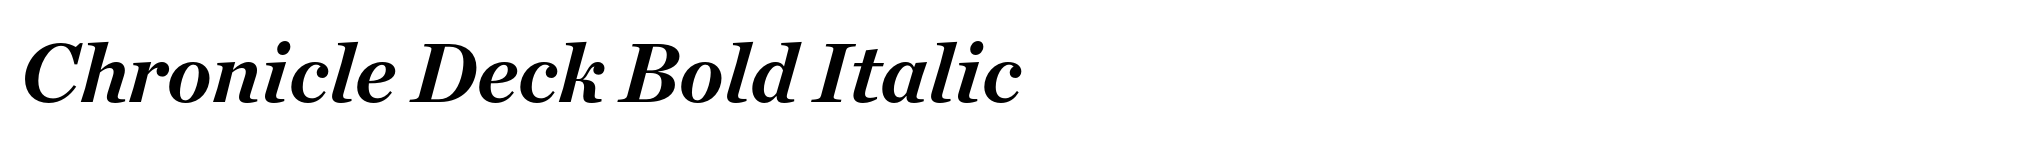 Chronicle Deck Bold Italic image